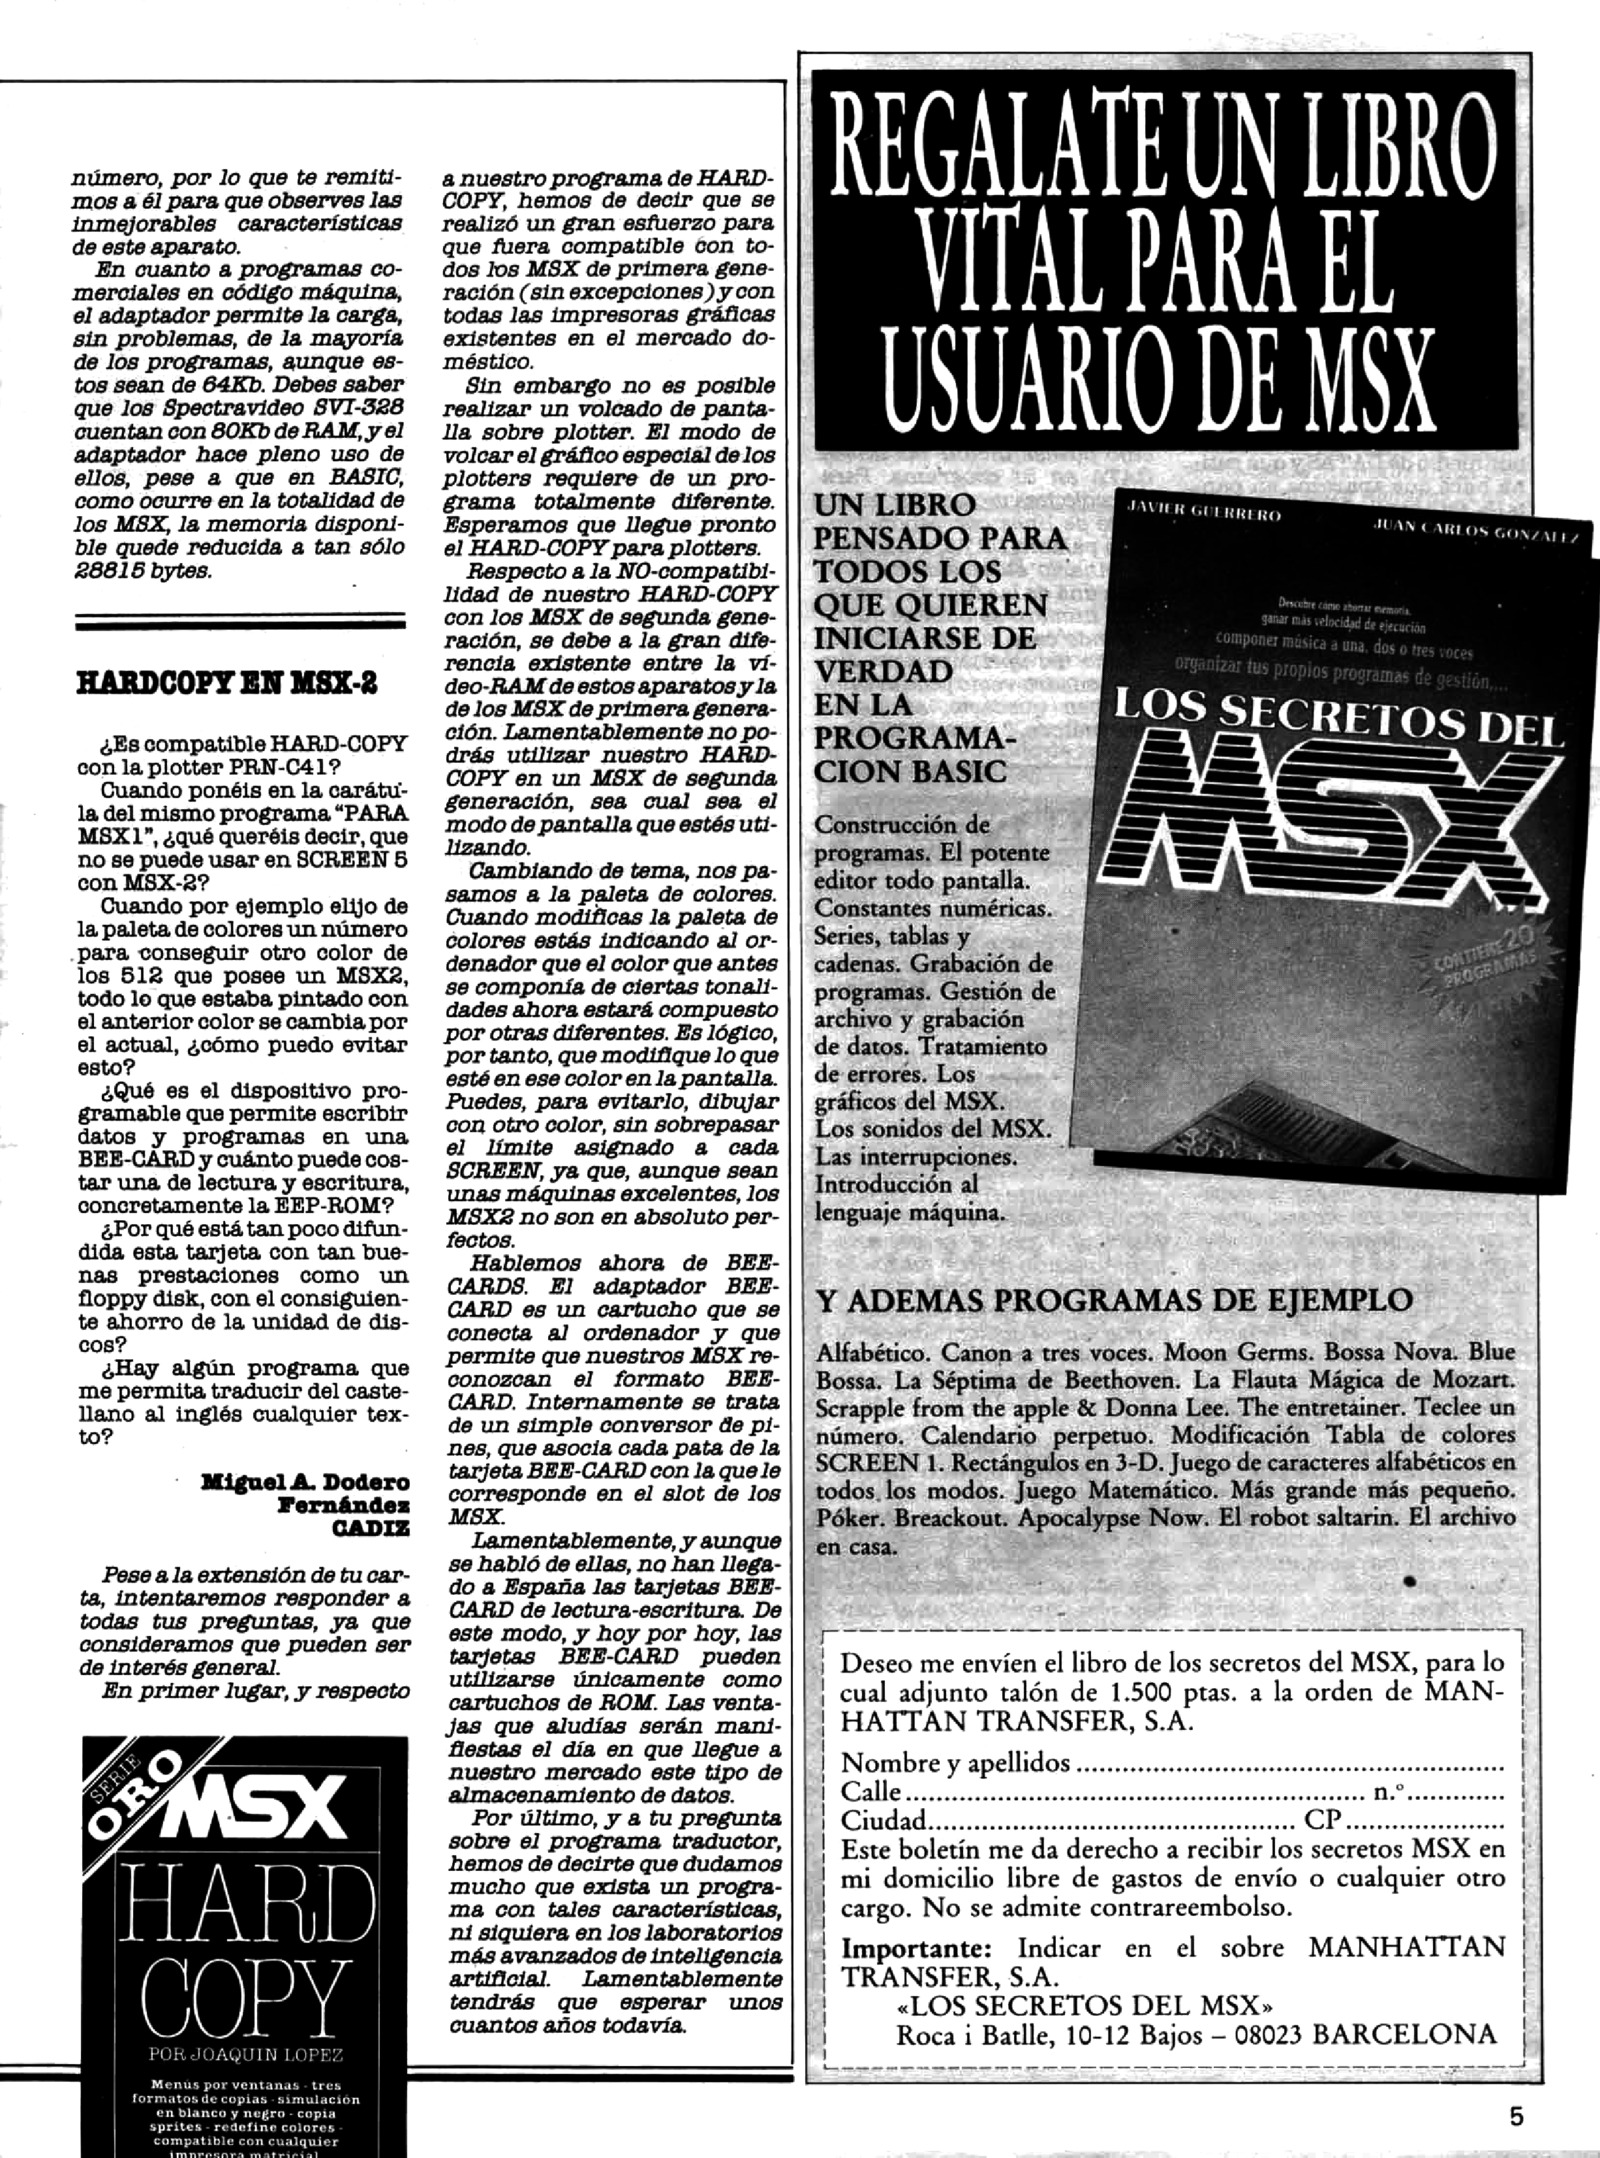 msx-extra 5